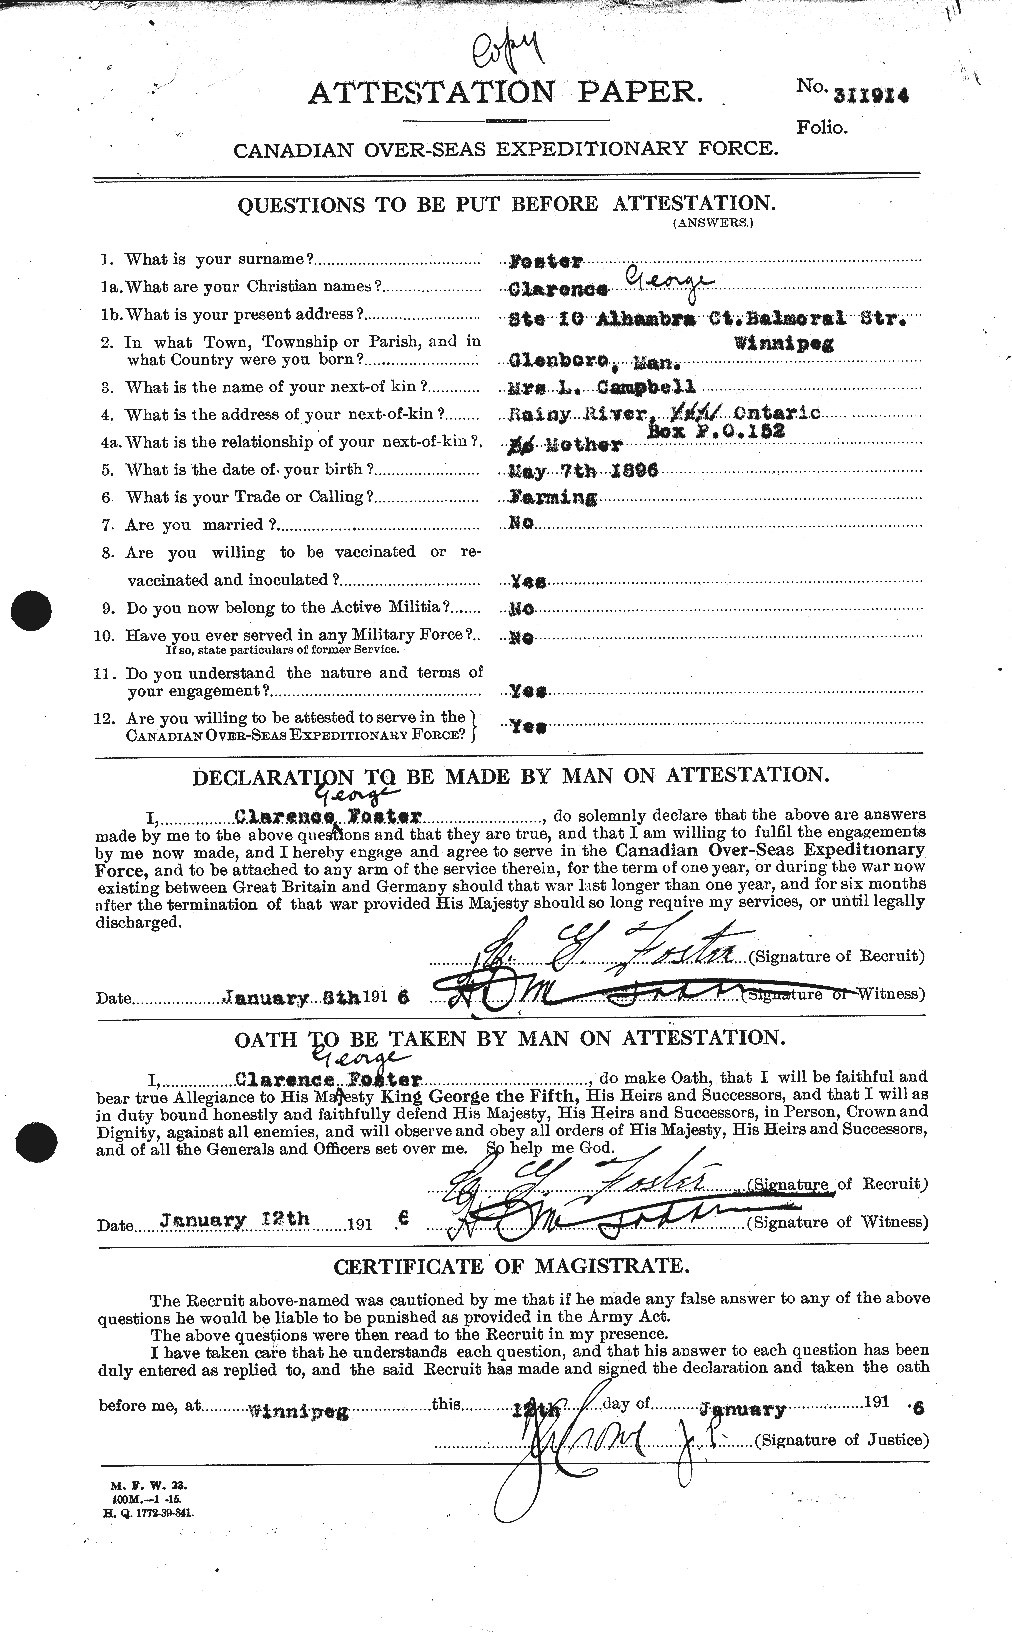 Dossiers du Personnel de la Première Guerre mondiale - CEC 330537a